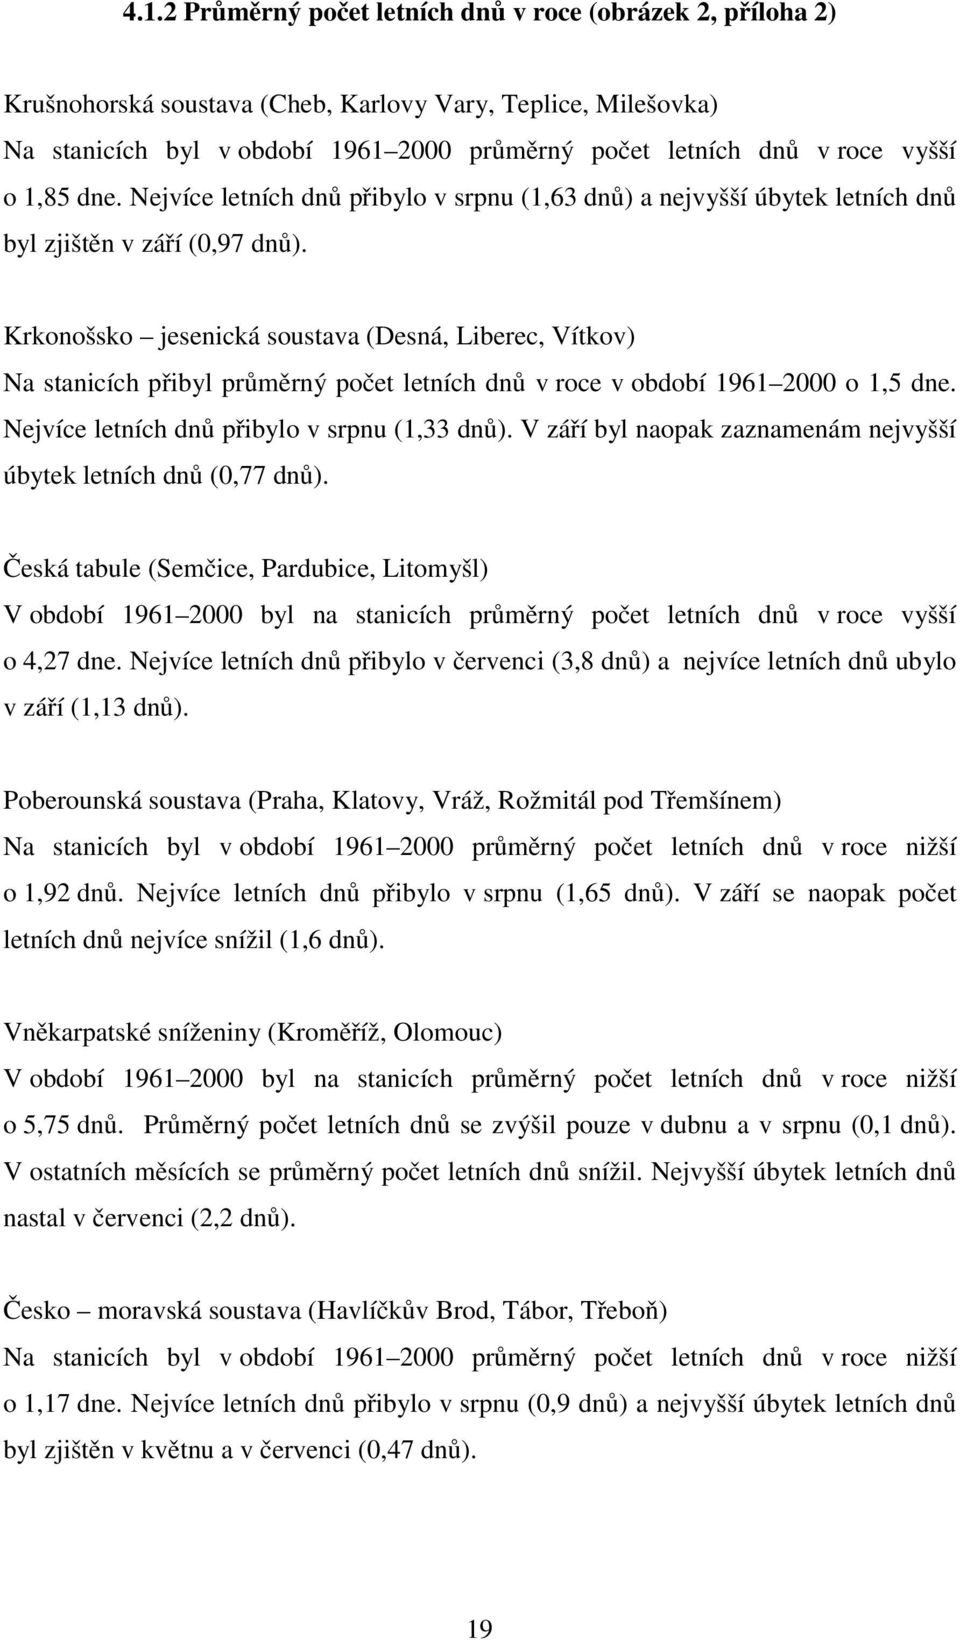 Krkonošsko jesenická soustava (Desná, Liberec, Vítkov) Na stanicích přibyl průměrný počet letních dnů v roce v období 1961 2000 o 1,5 dne. Nejvíce letních dnů přibylo v srpnu (1,33 dnů).